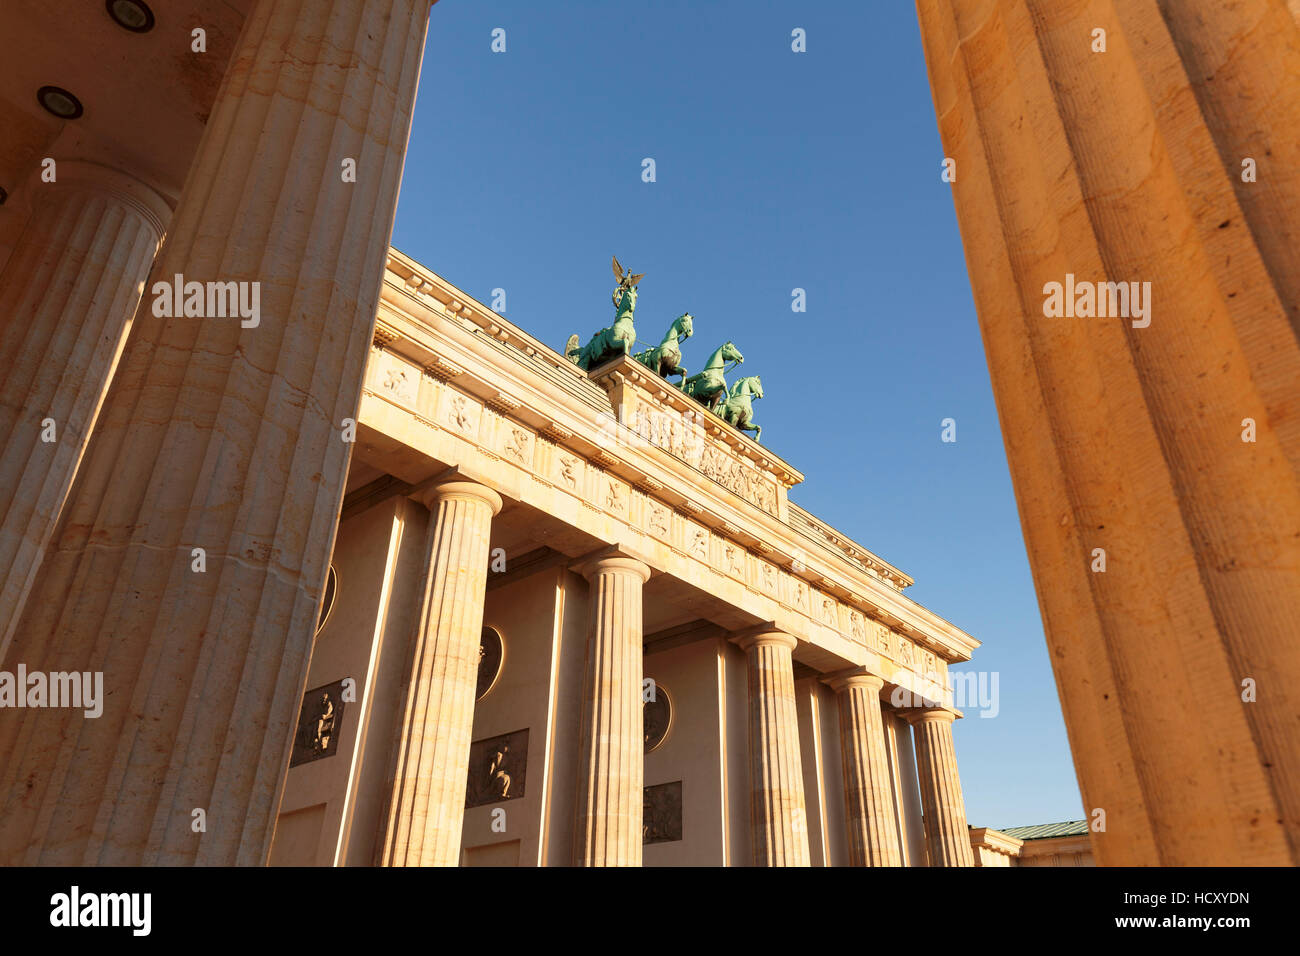 Porte de Brandebourg (Brandenburger Tor) au lever du soleil, Quadrige, Berlin Mitte, Berlin, Allemagne Banque D'Images